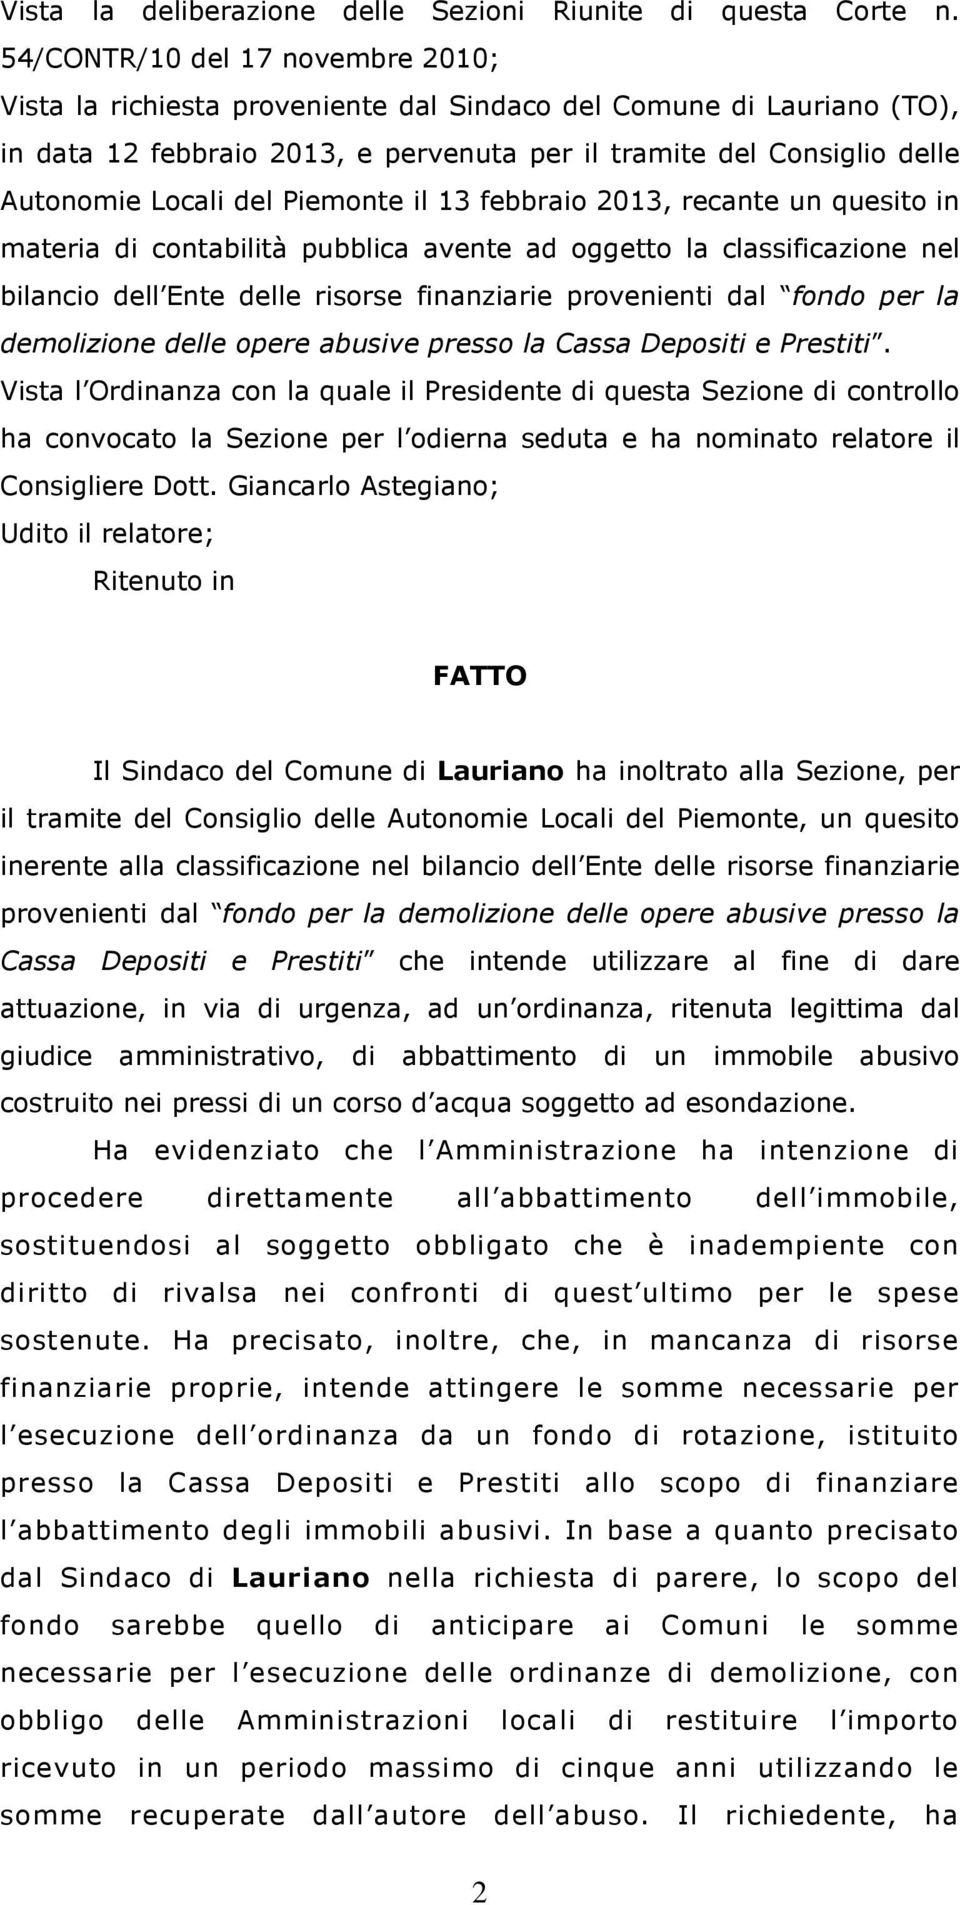 Piemonte il 13 febbraio 2013, recante un quesito in materia di contabilità pubblica avente ad oggetto la classificazione nel bilancio dell Ente delle risorse finanziarie provenienti dal fondo per la